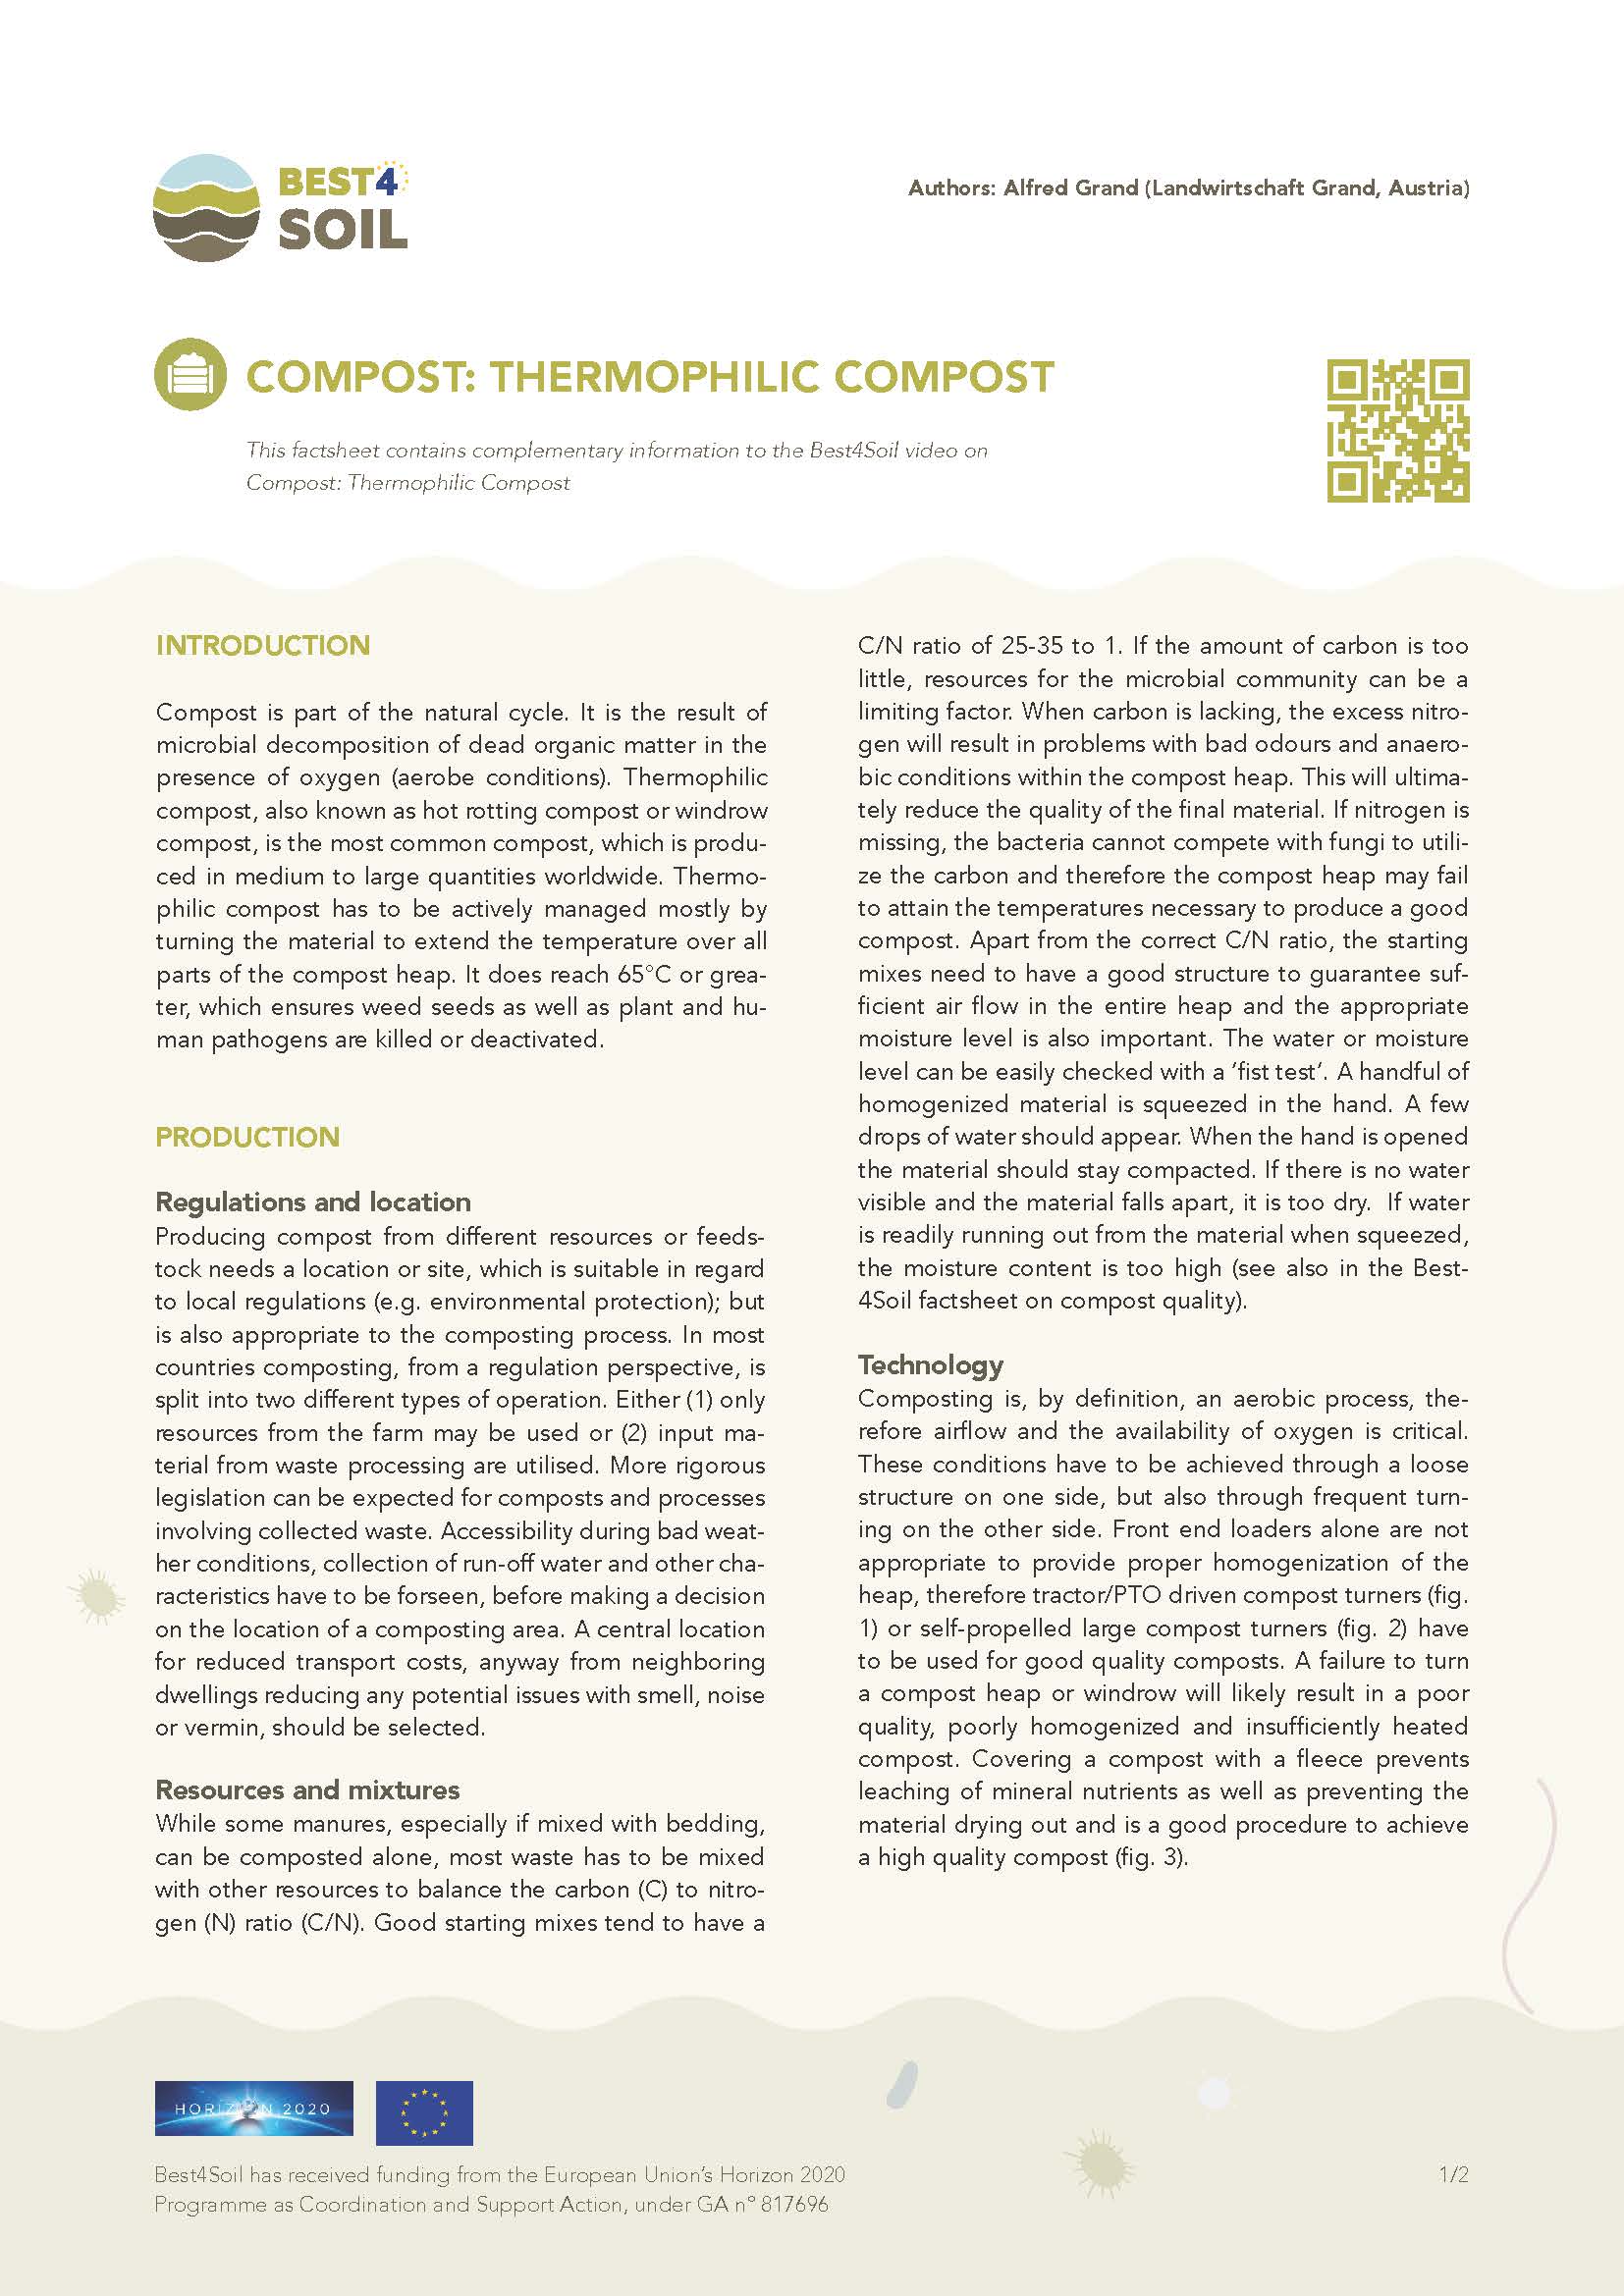 Kompost: Kompost termofilny (arkusz informacyjny Best4Soil)